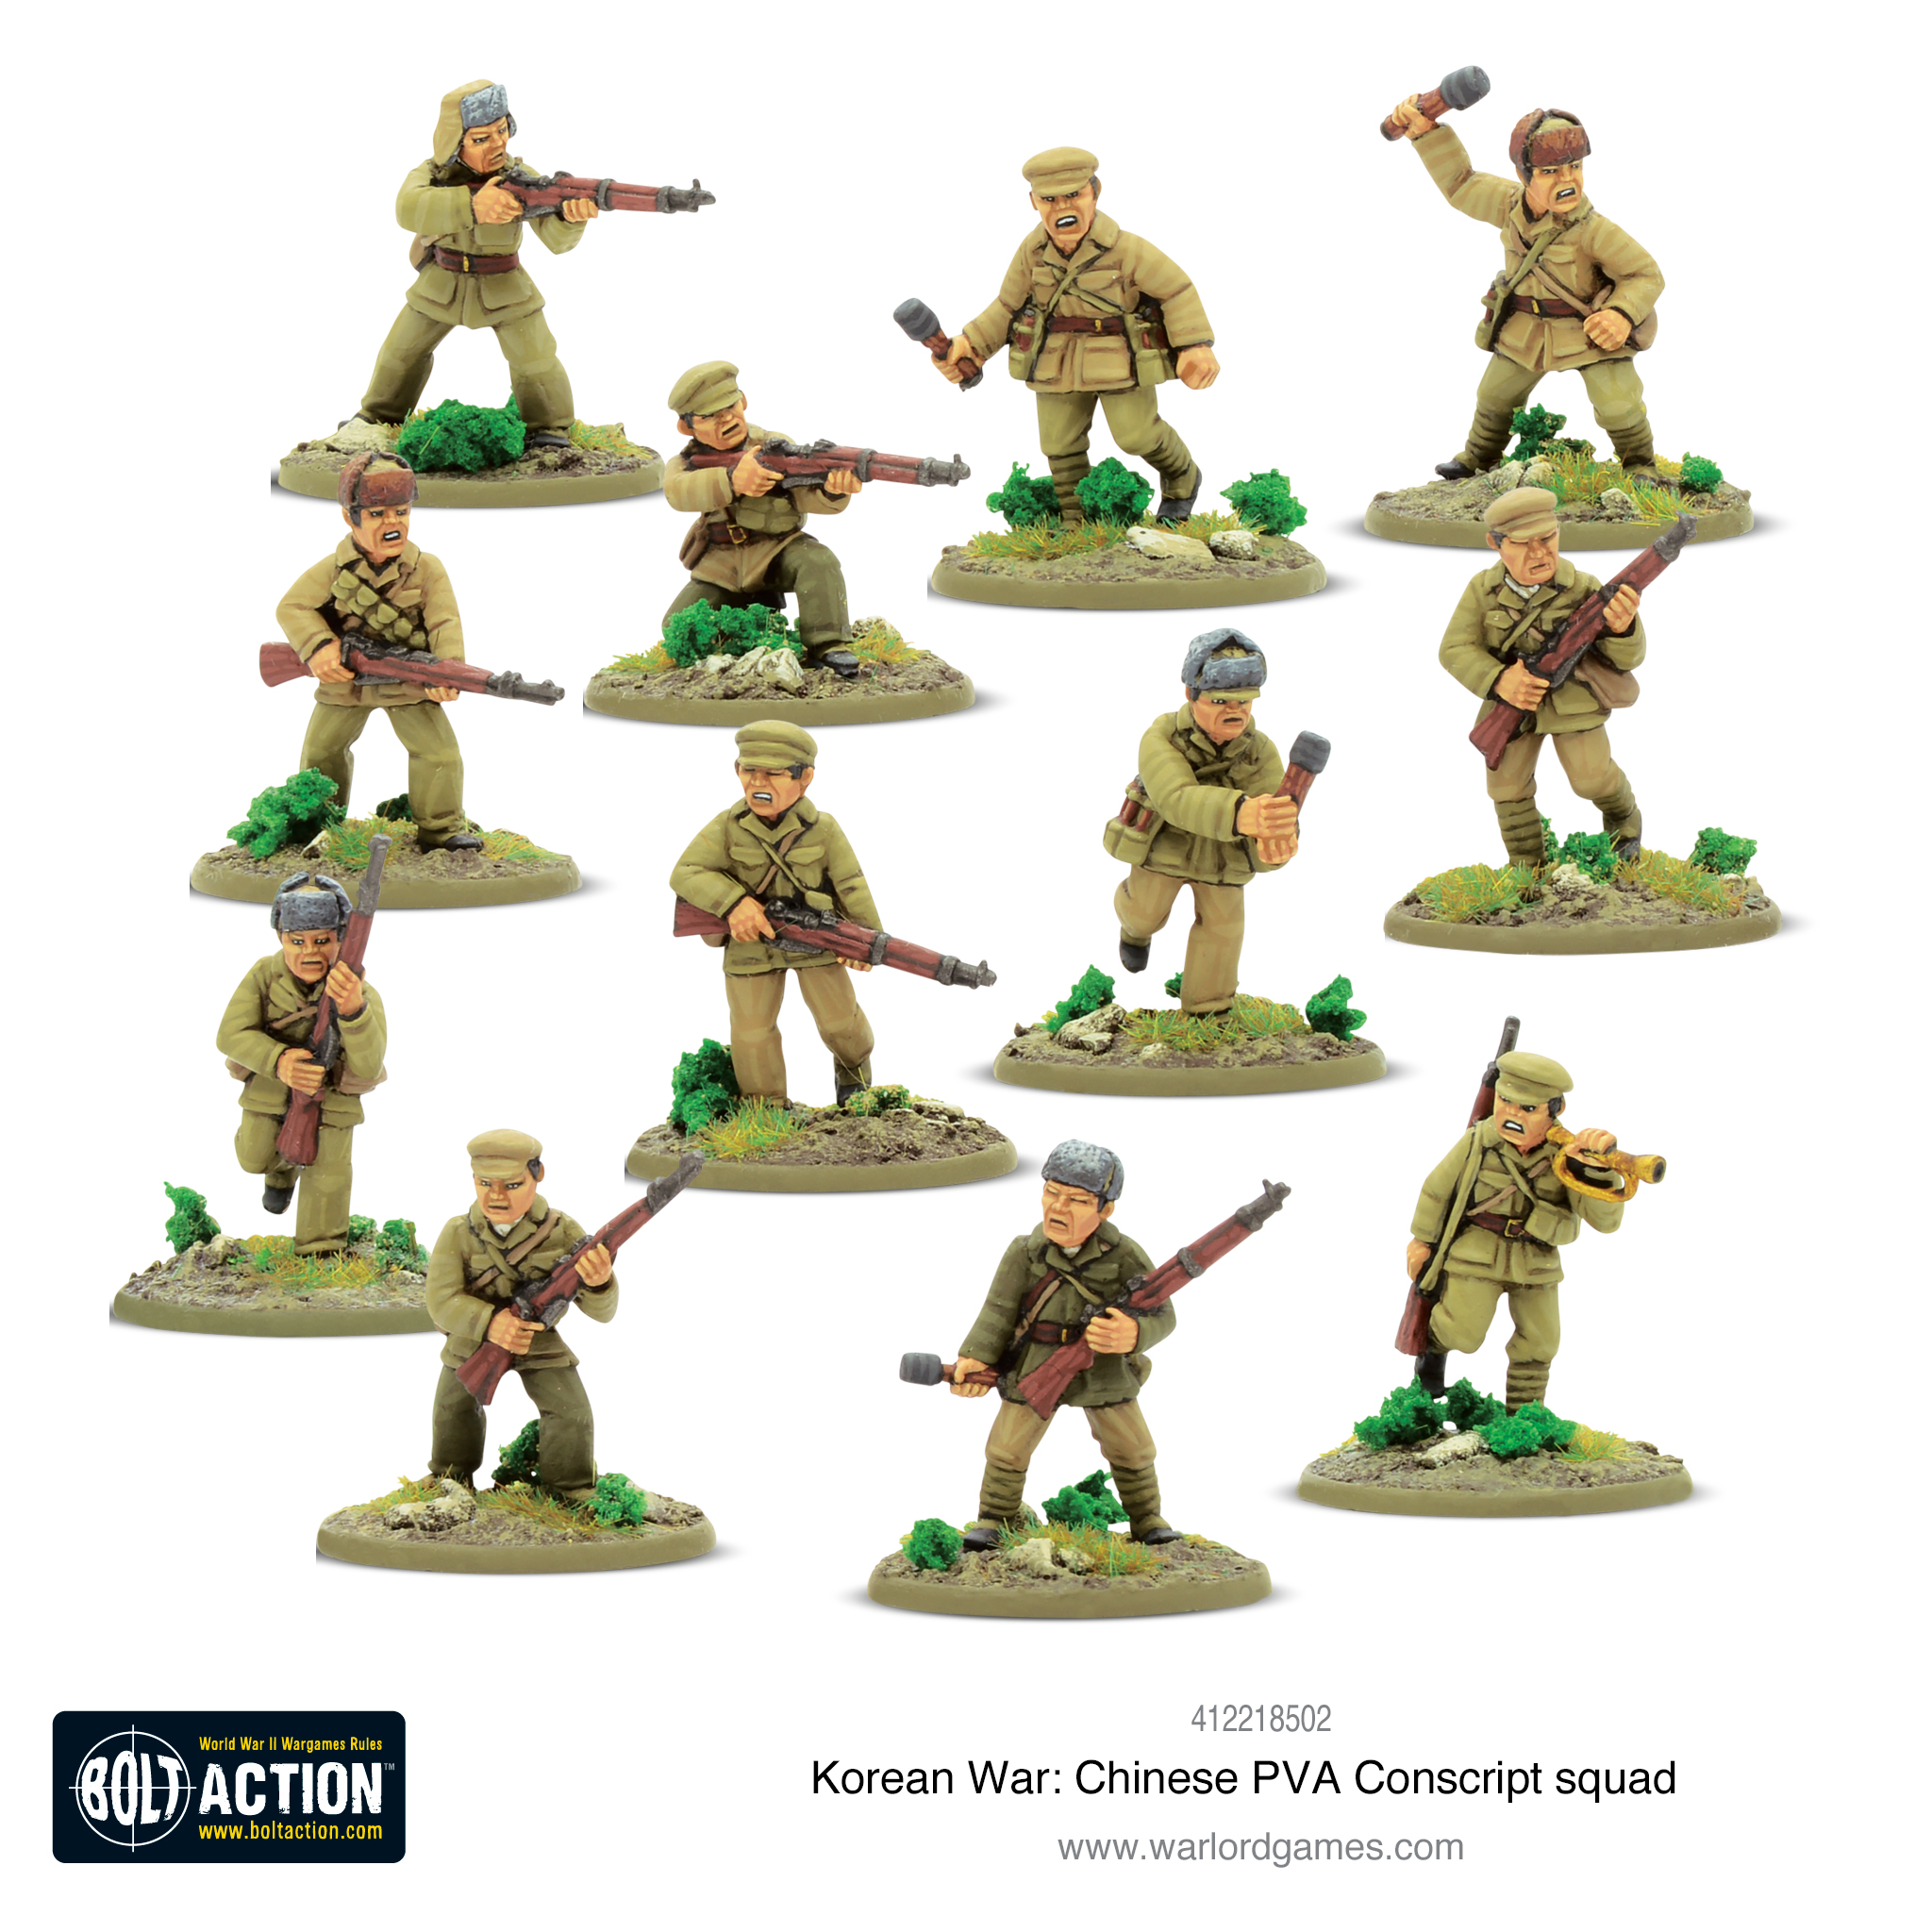 Chinese PVA Conscript Squad